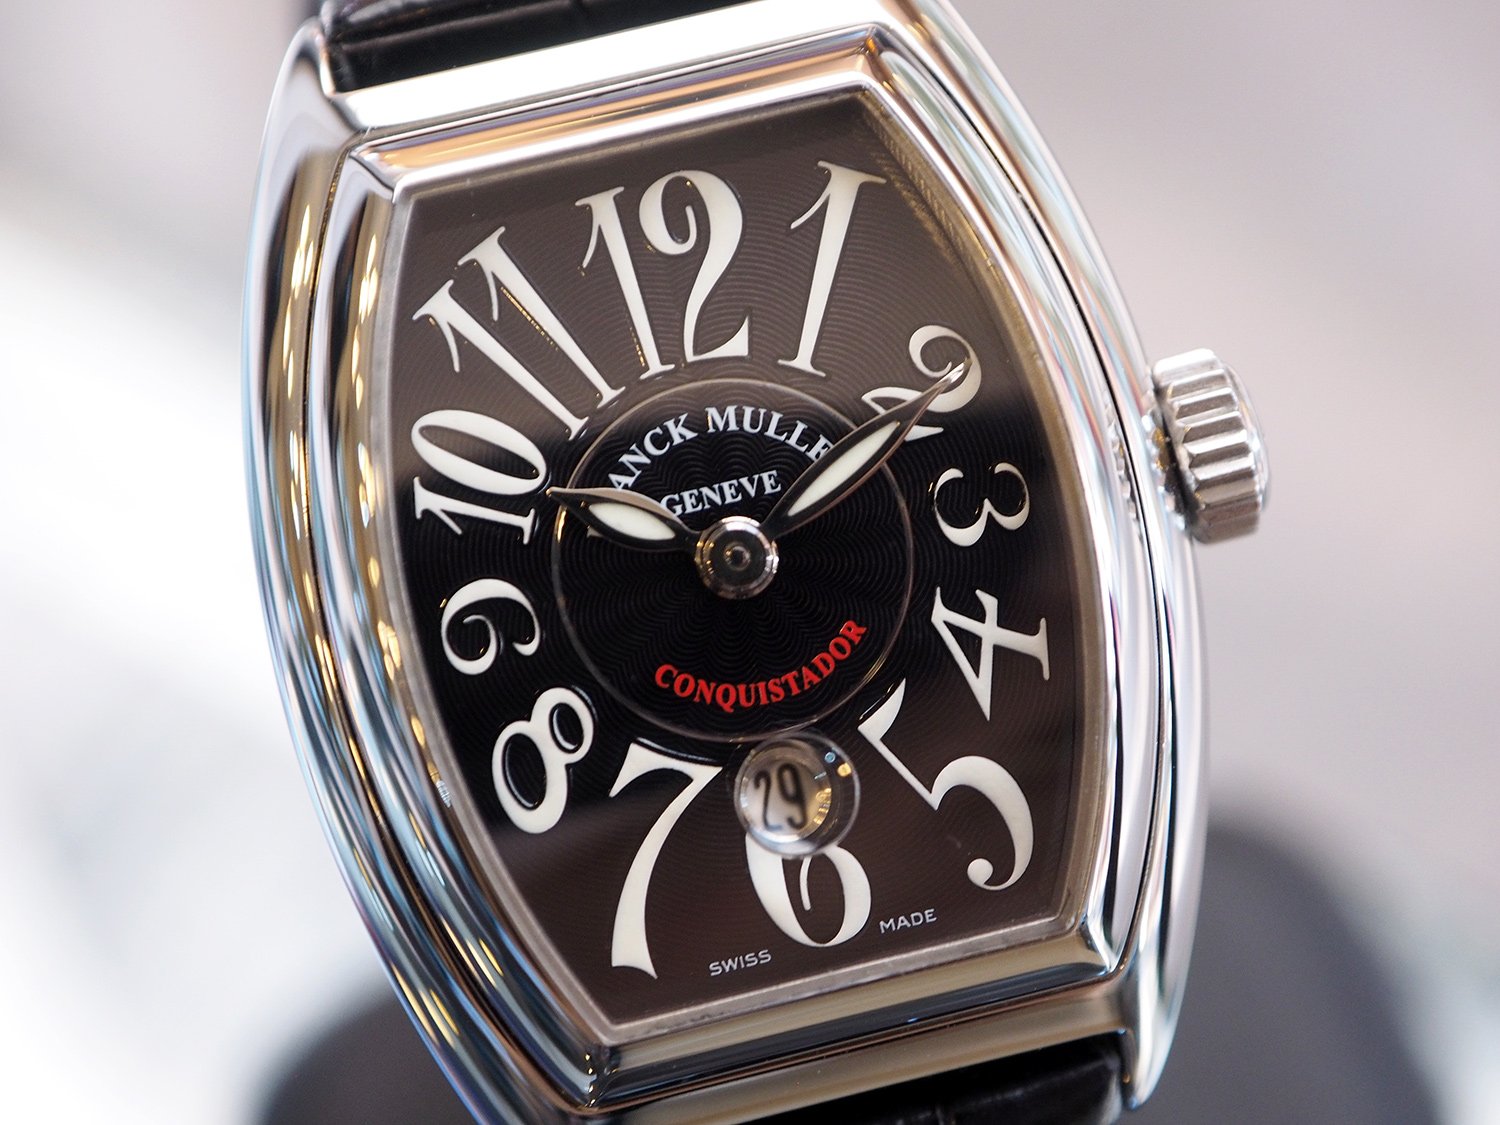 Часы фрэнк. Франк Мюллер Женева. Часы Франк Мюллер Geneve. Фрэнк Мюллер Женева часы. Часы Franck Muller 1932.